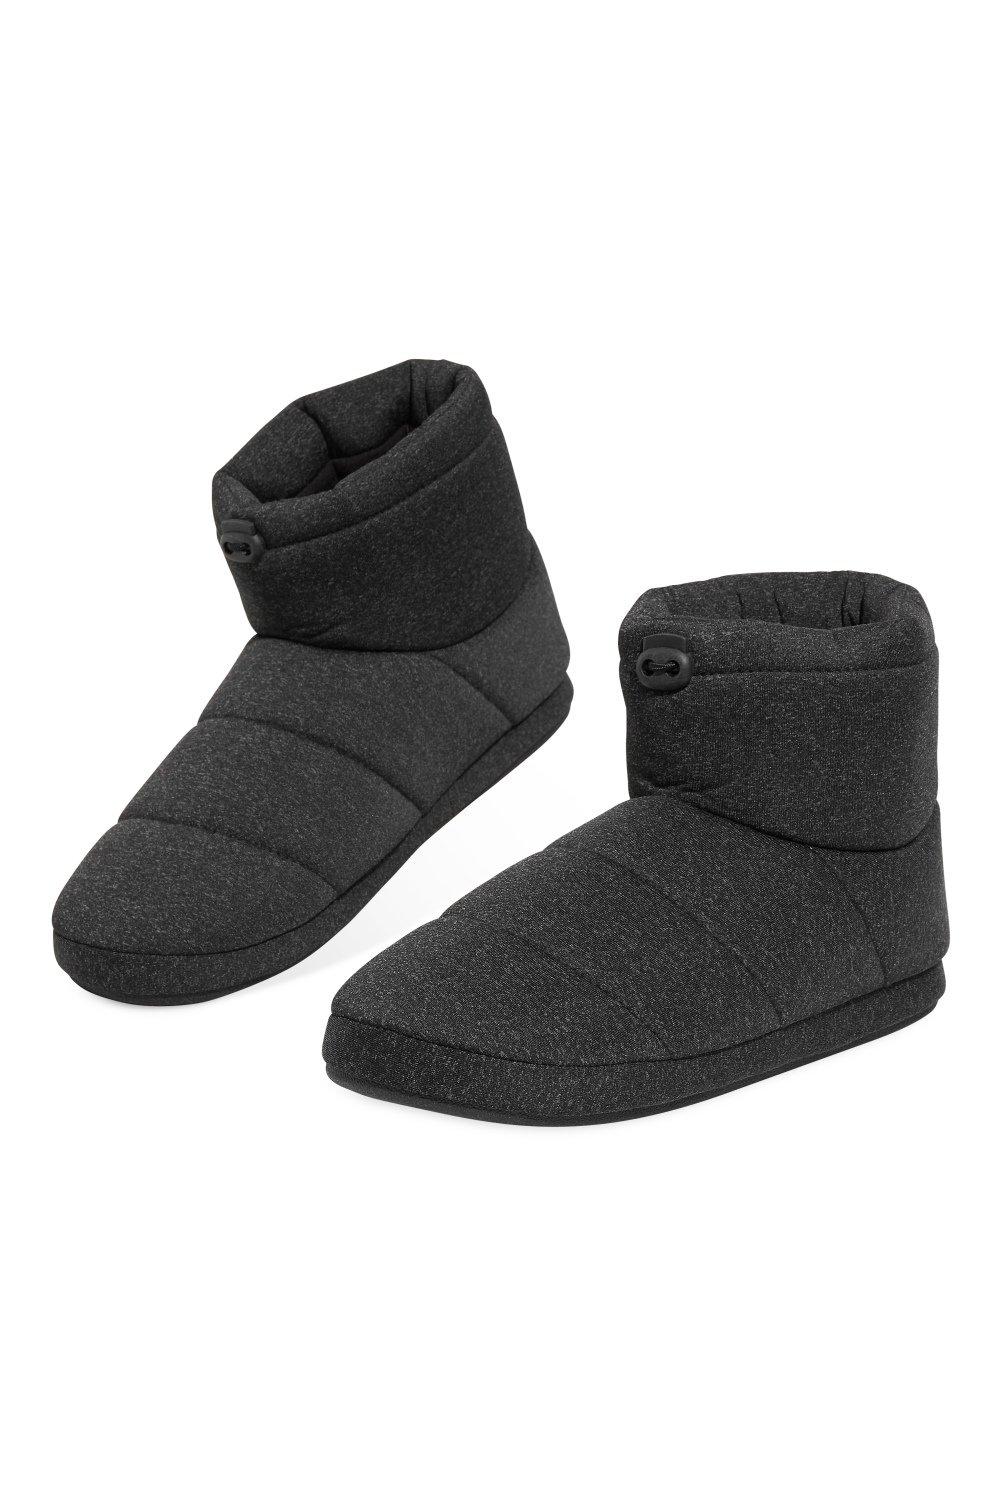 Тапочки-сапожки Dunlop, черный мужские пушистые тапочки домашние зимние разноцветные противоскользящие плюшевые мягкие удобные мужские повседневные домашние туфли на